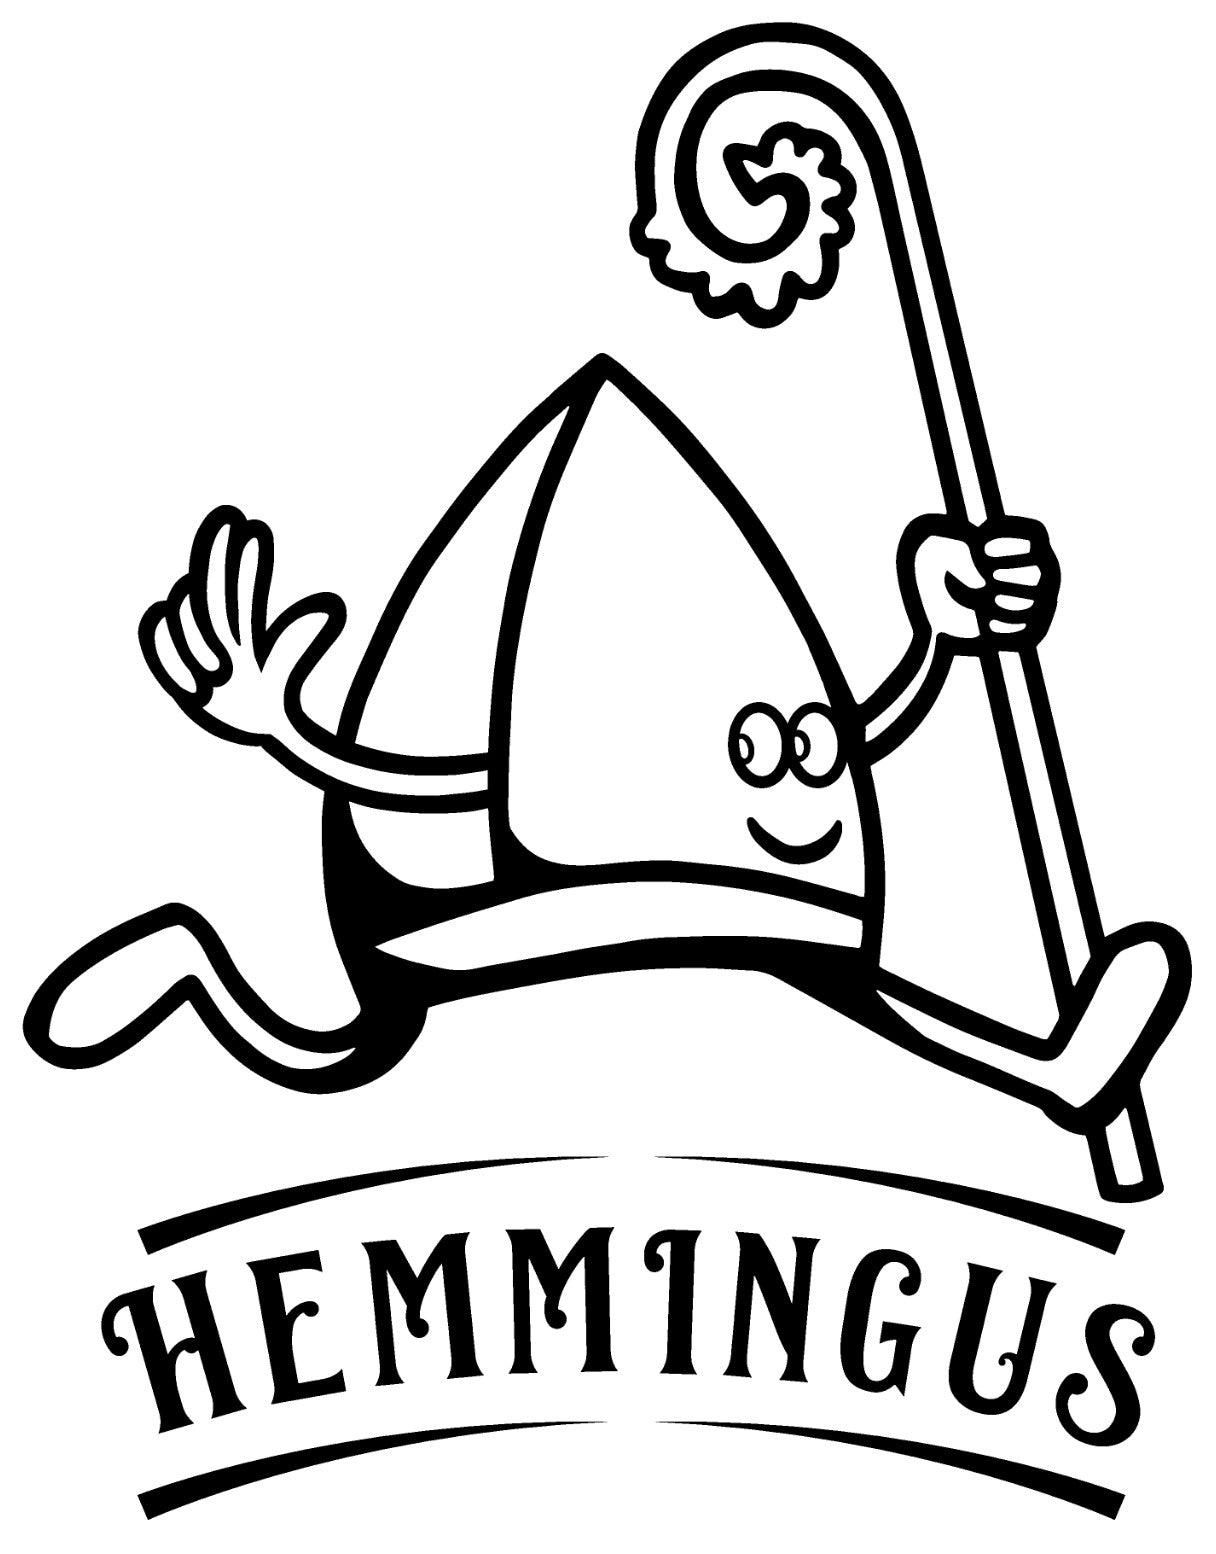 Hemmingus